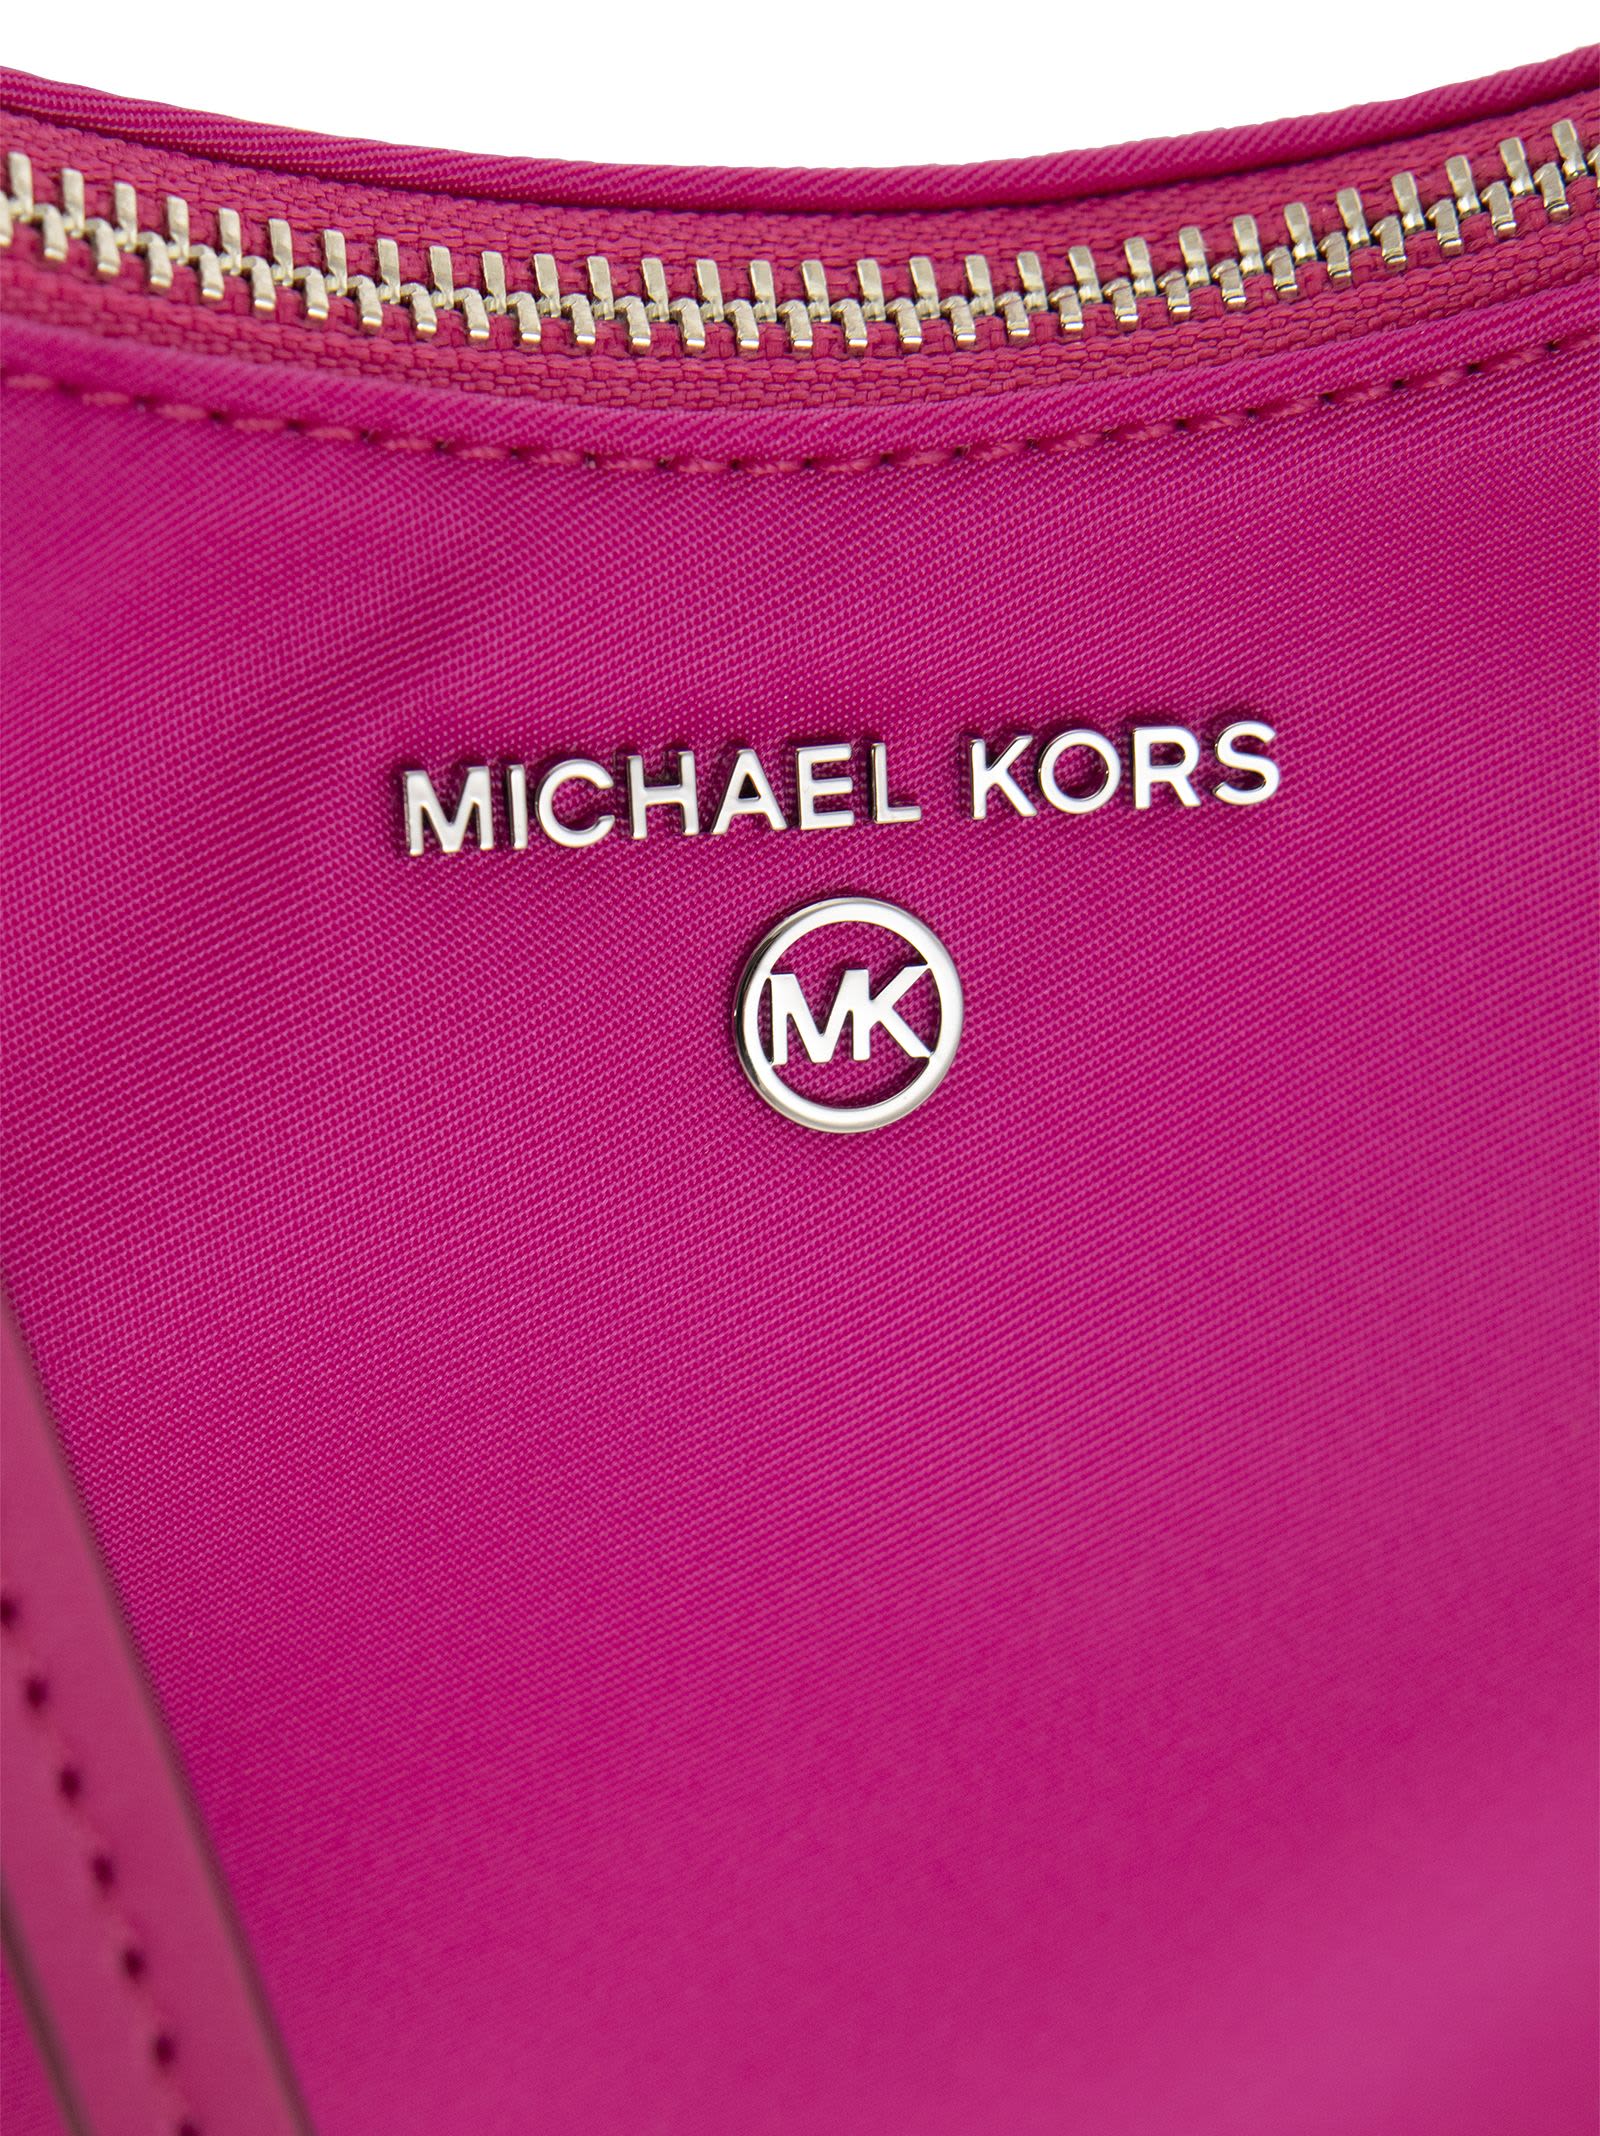 Michael Kors Jet Set Charm Small Shoulder Bag in Soft Pink